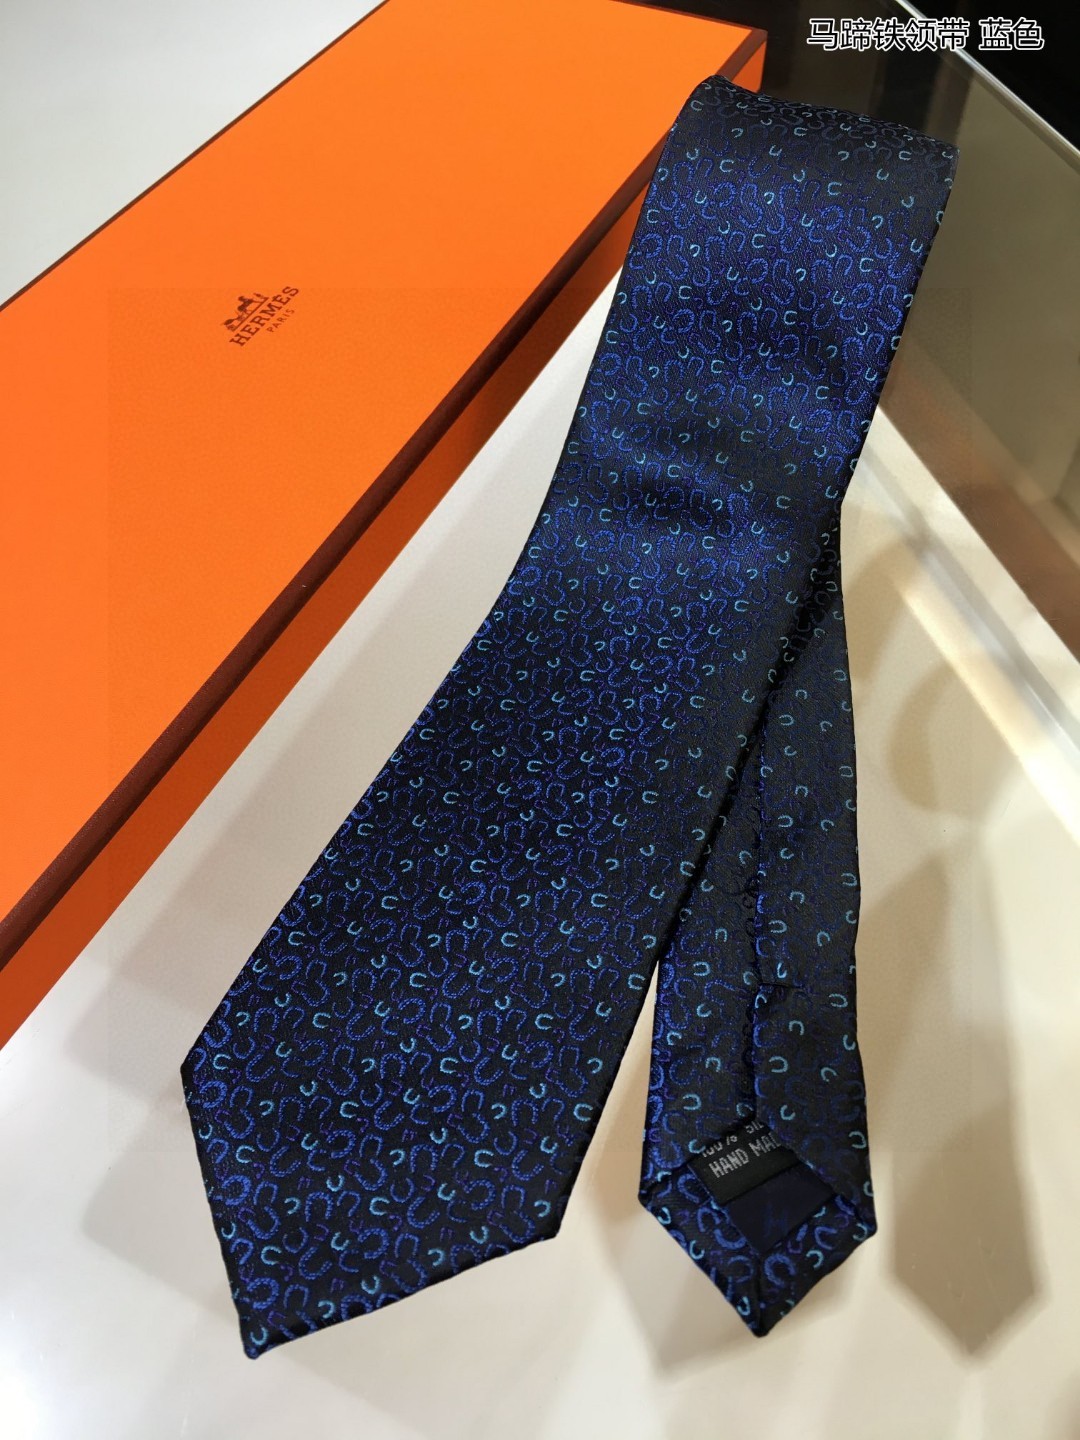 男士新款领带系列马蹄铁领带稀有H家每年都有一千条不同印花的领带面世从最初的多以几何图案表现骑术活动为主到